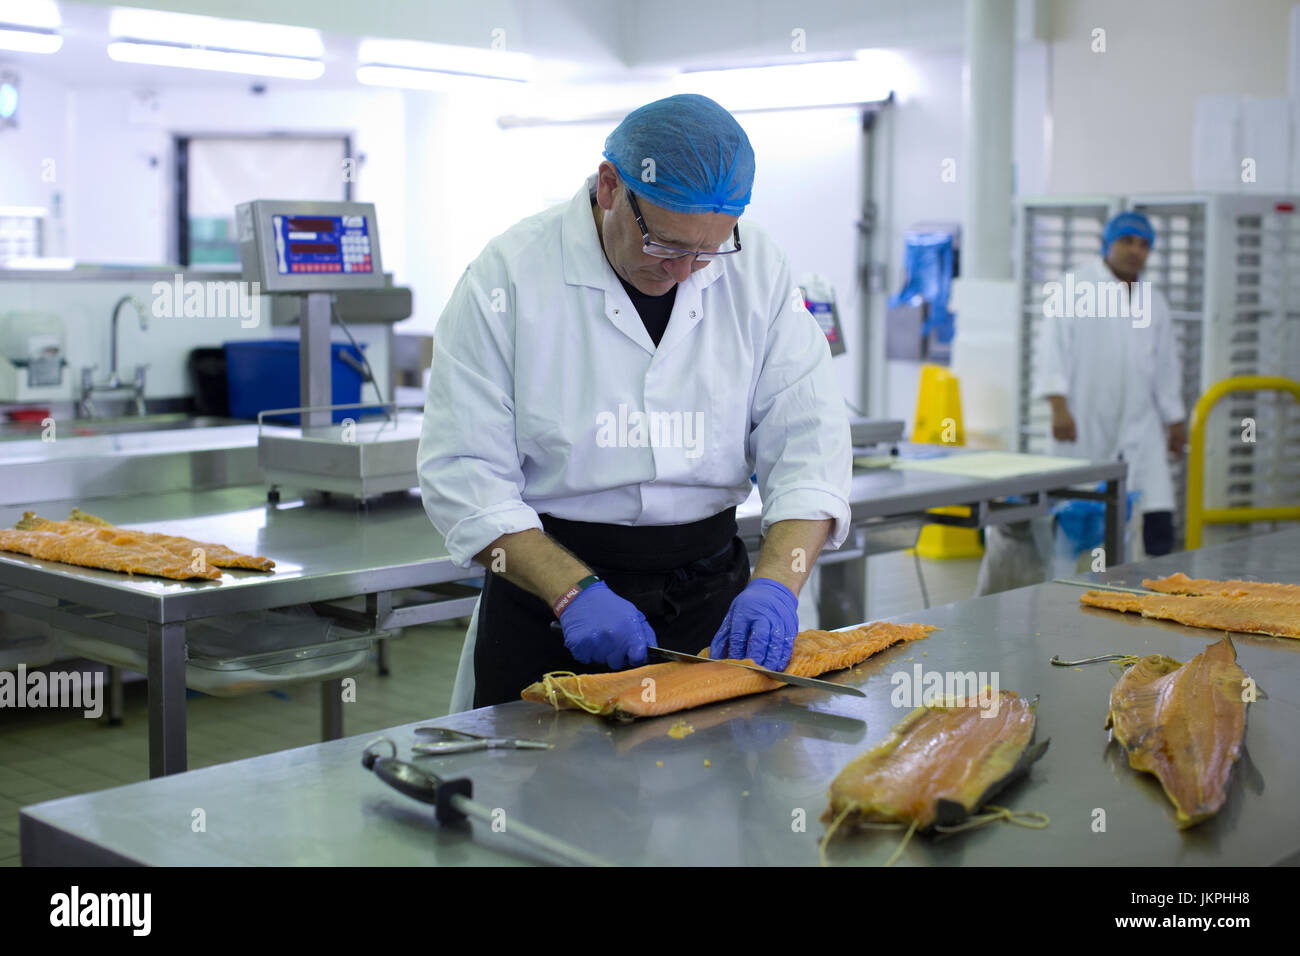 Le saumon de l'Est H Smokehouse, Forman & Son's, qui a récemment bénéficié d'une Indication Géographique Protégée (IGP), statut d'Hackney Wick, London, UK Banque D'Images